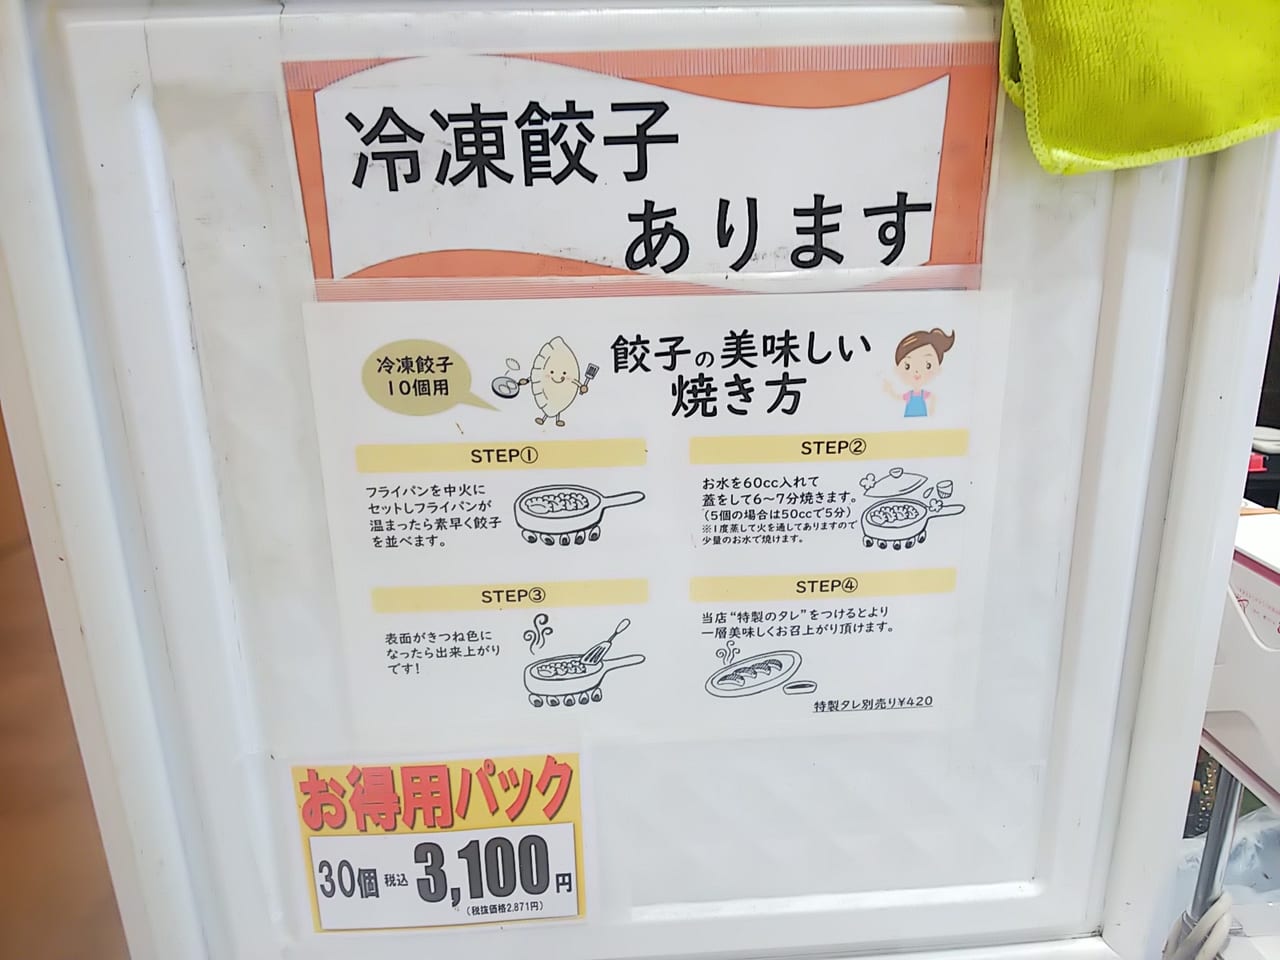 ハローズ東広島で実演販売「とびきり餃子」